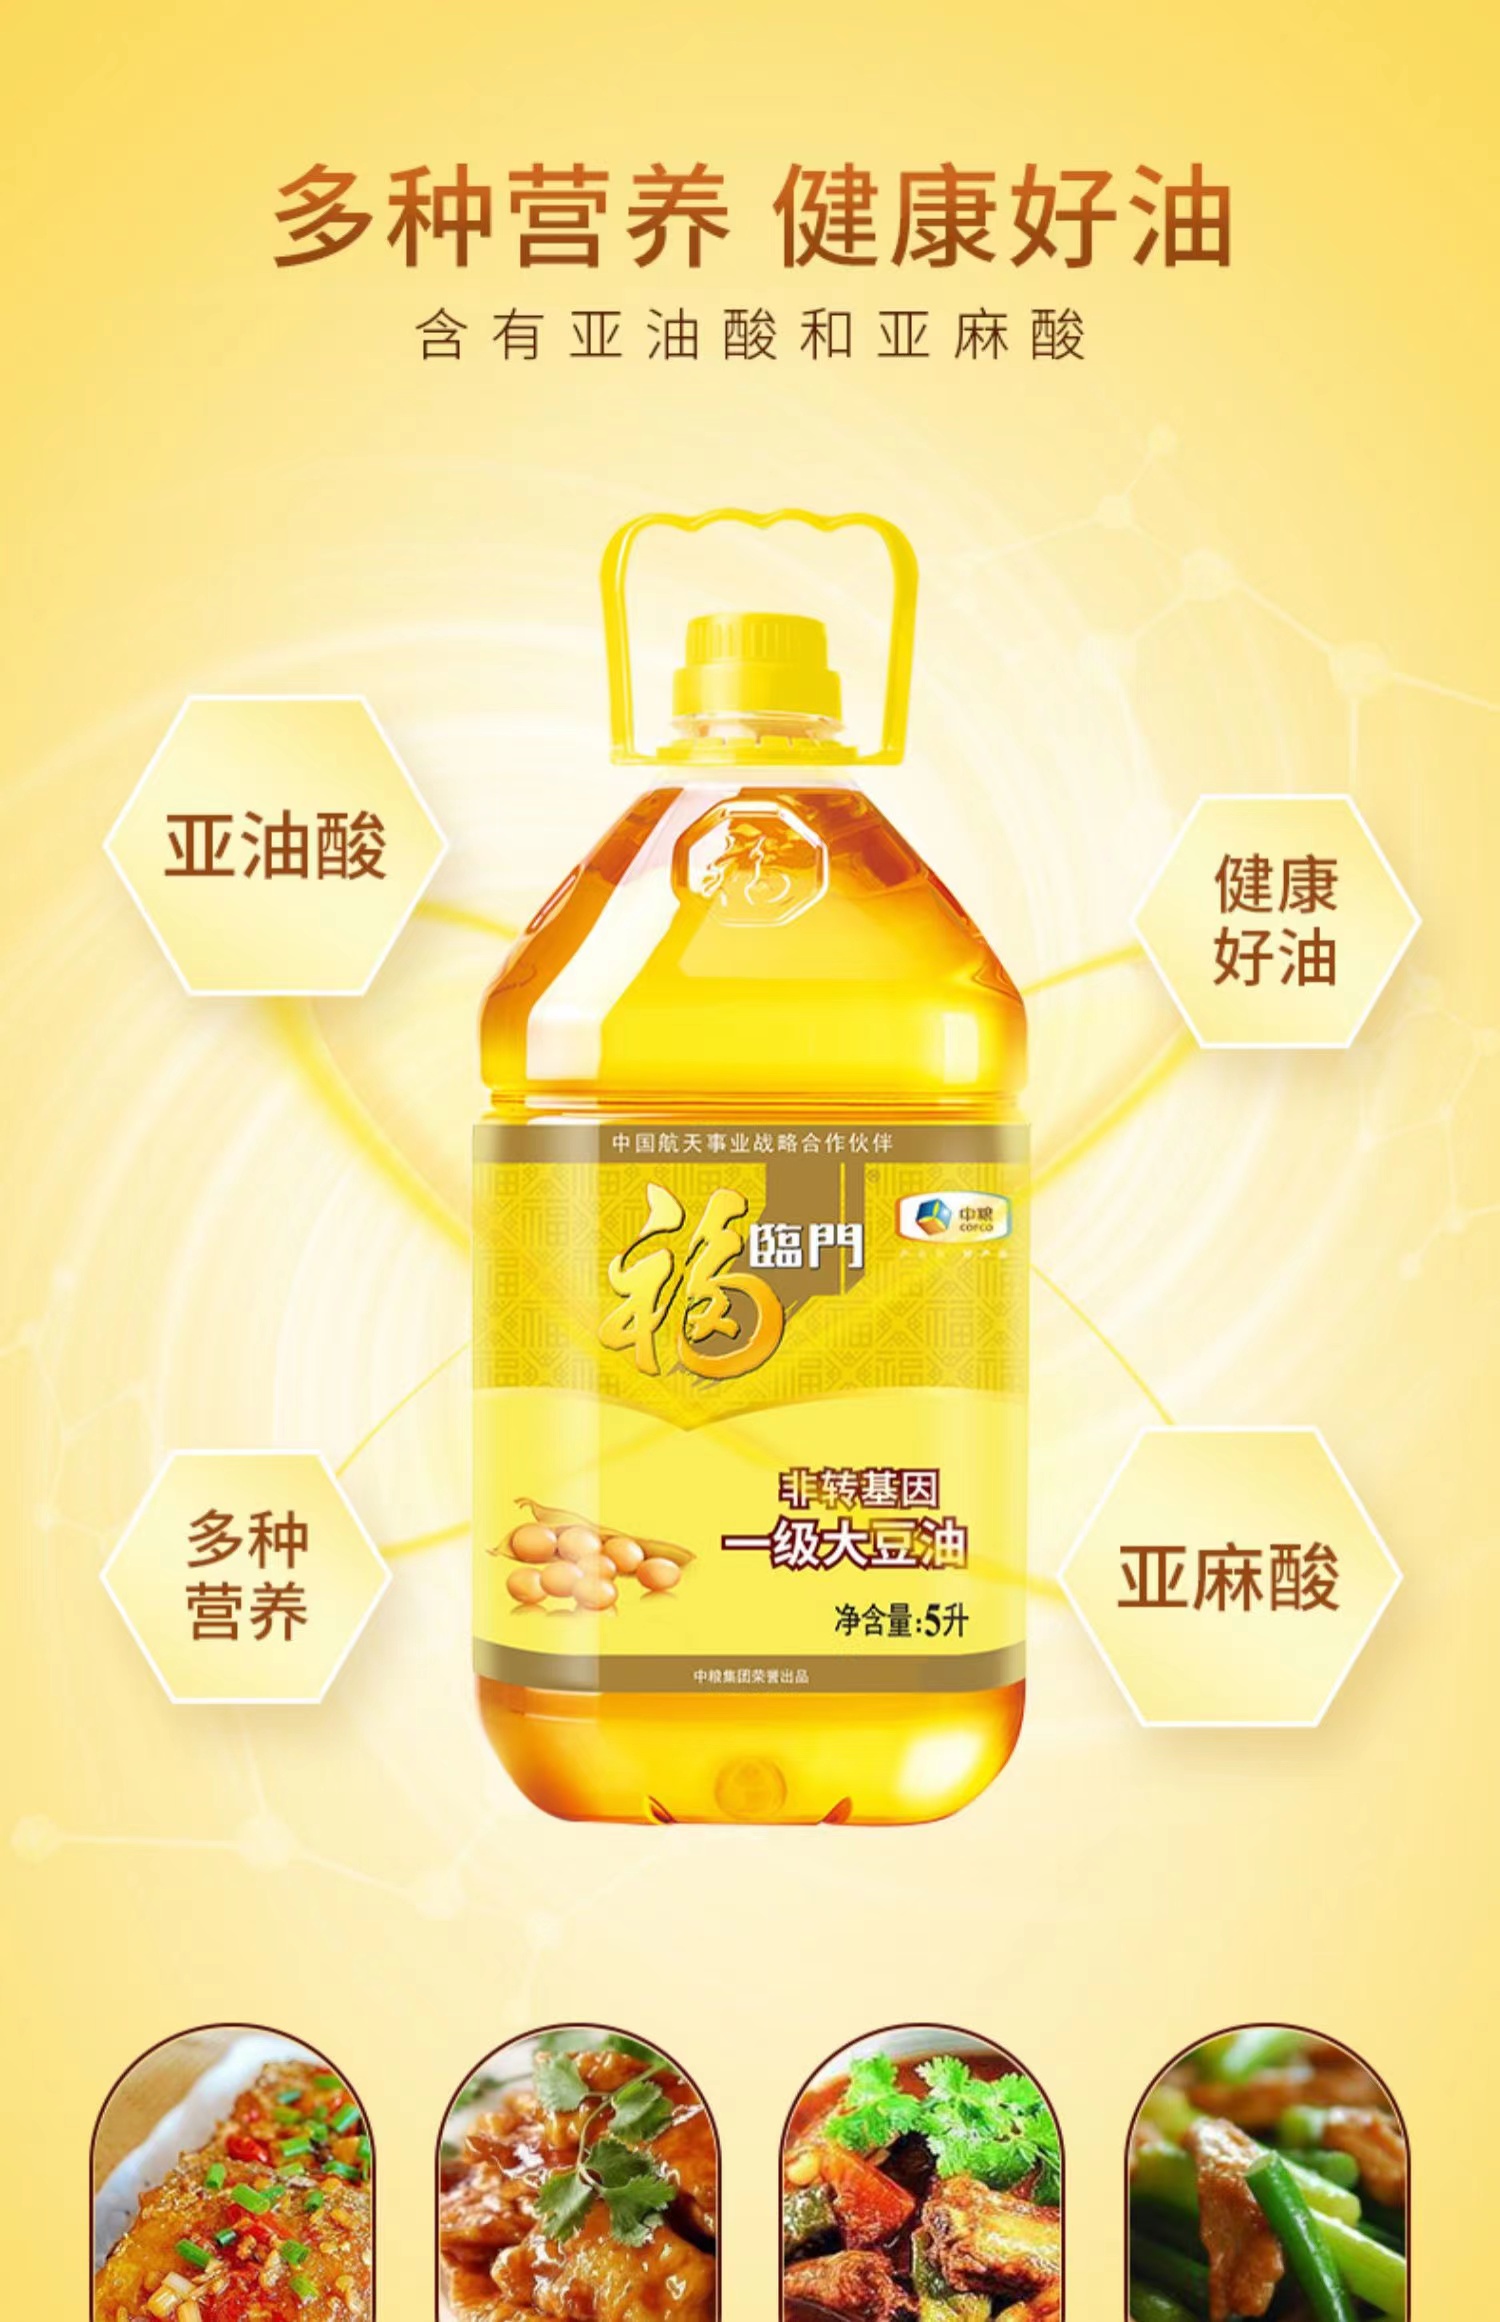 福临门大豆油1.5升图片